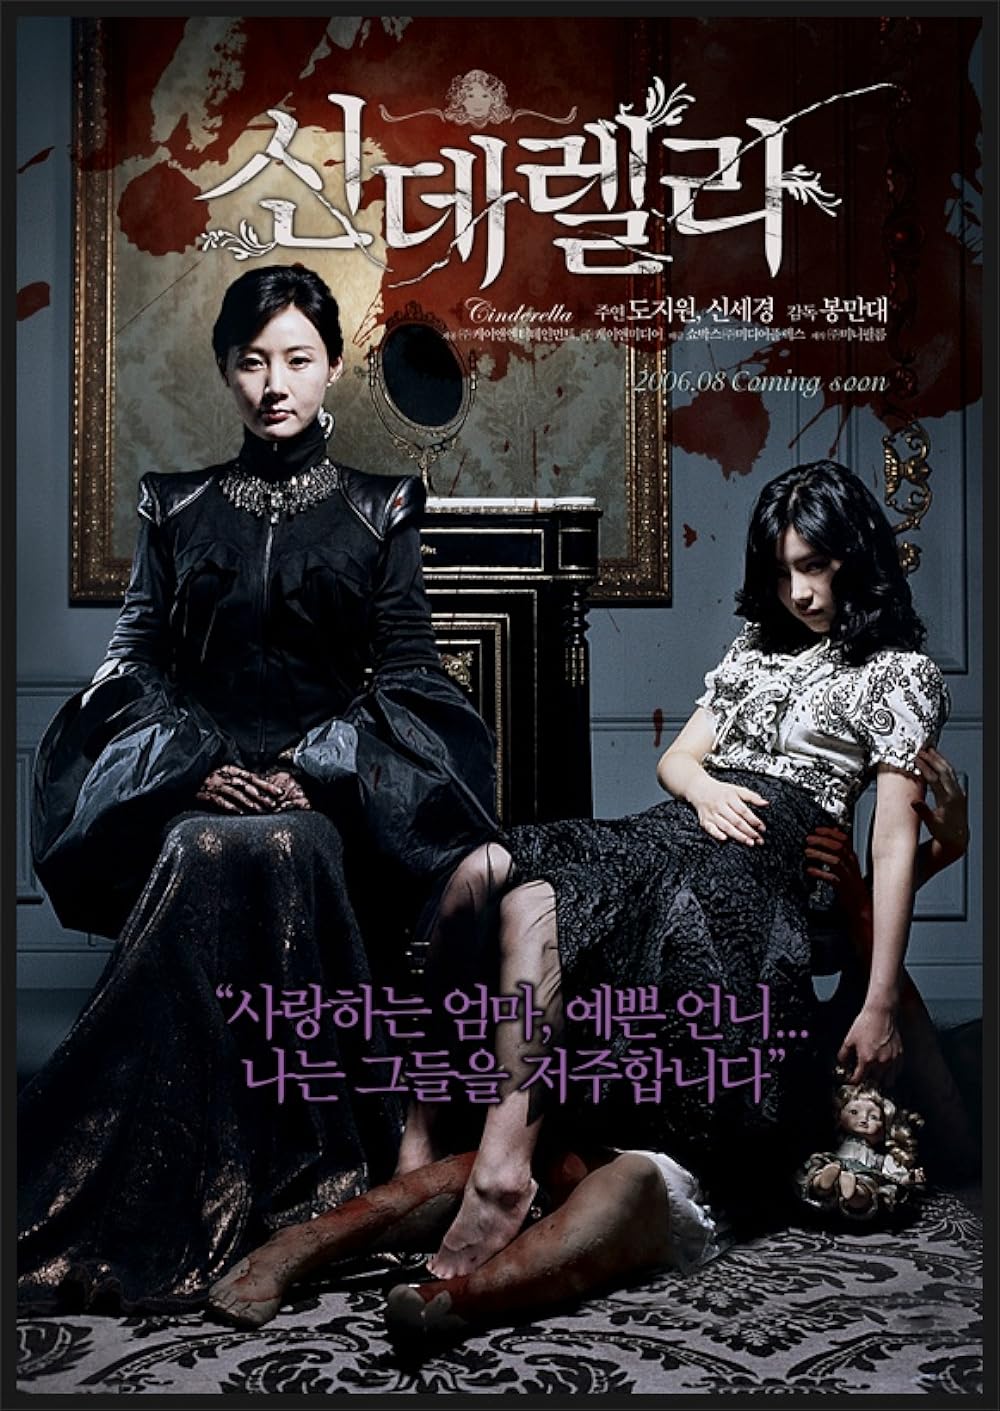 Top phim kinh dị Hàn Quốc: Gương mặt mũi fake - Cinderella (2006)